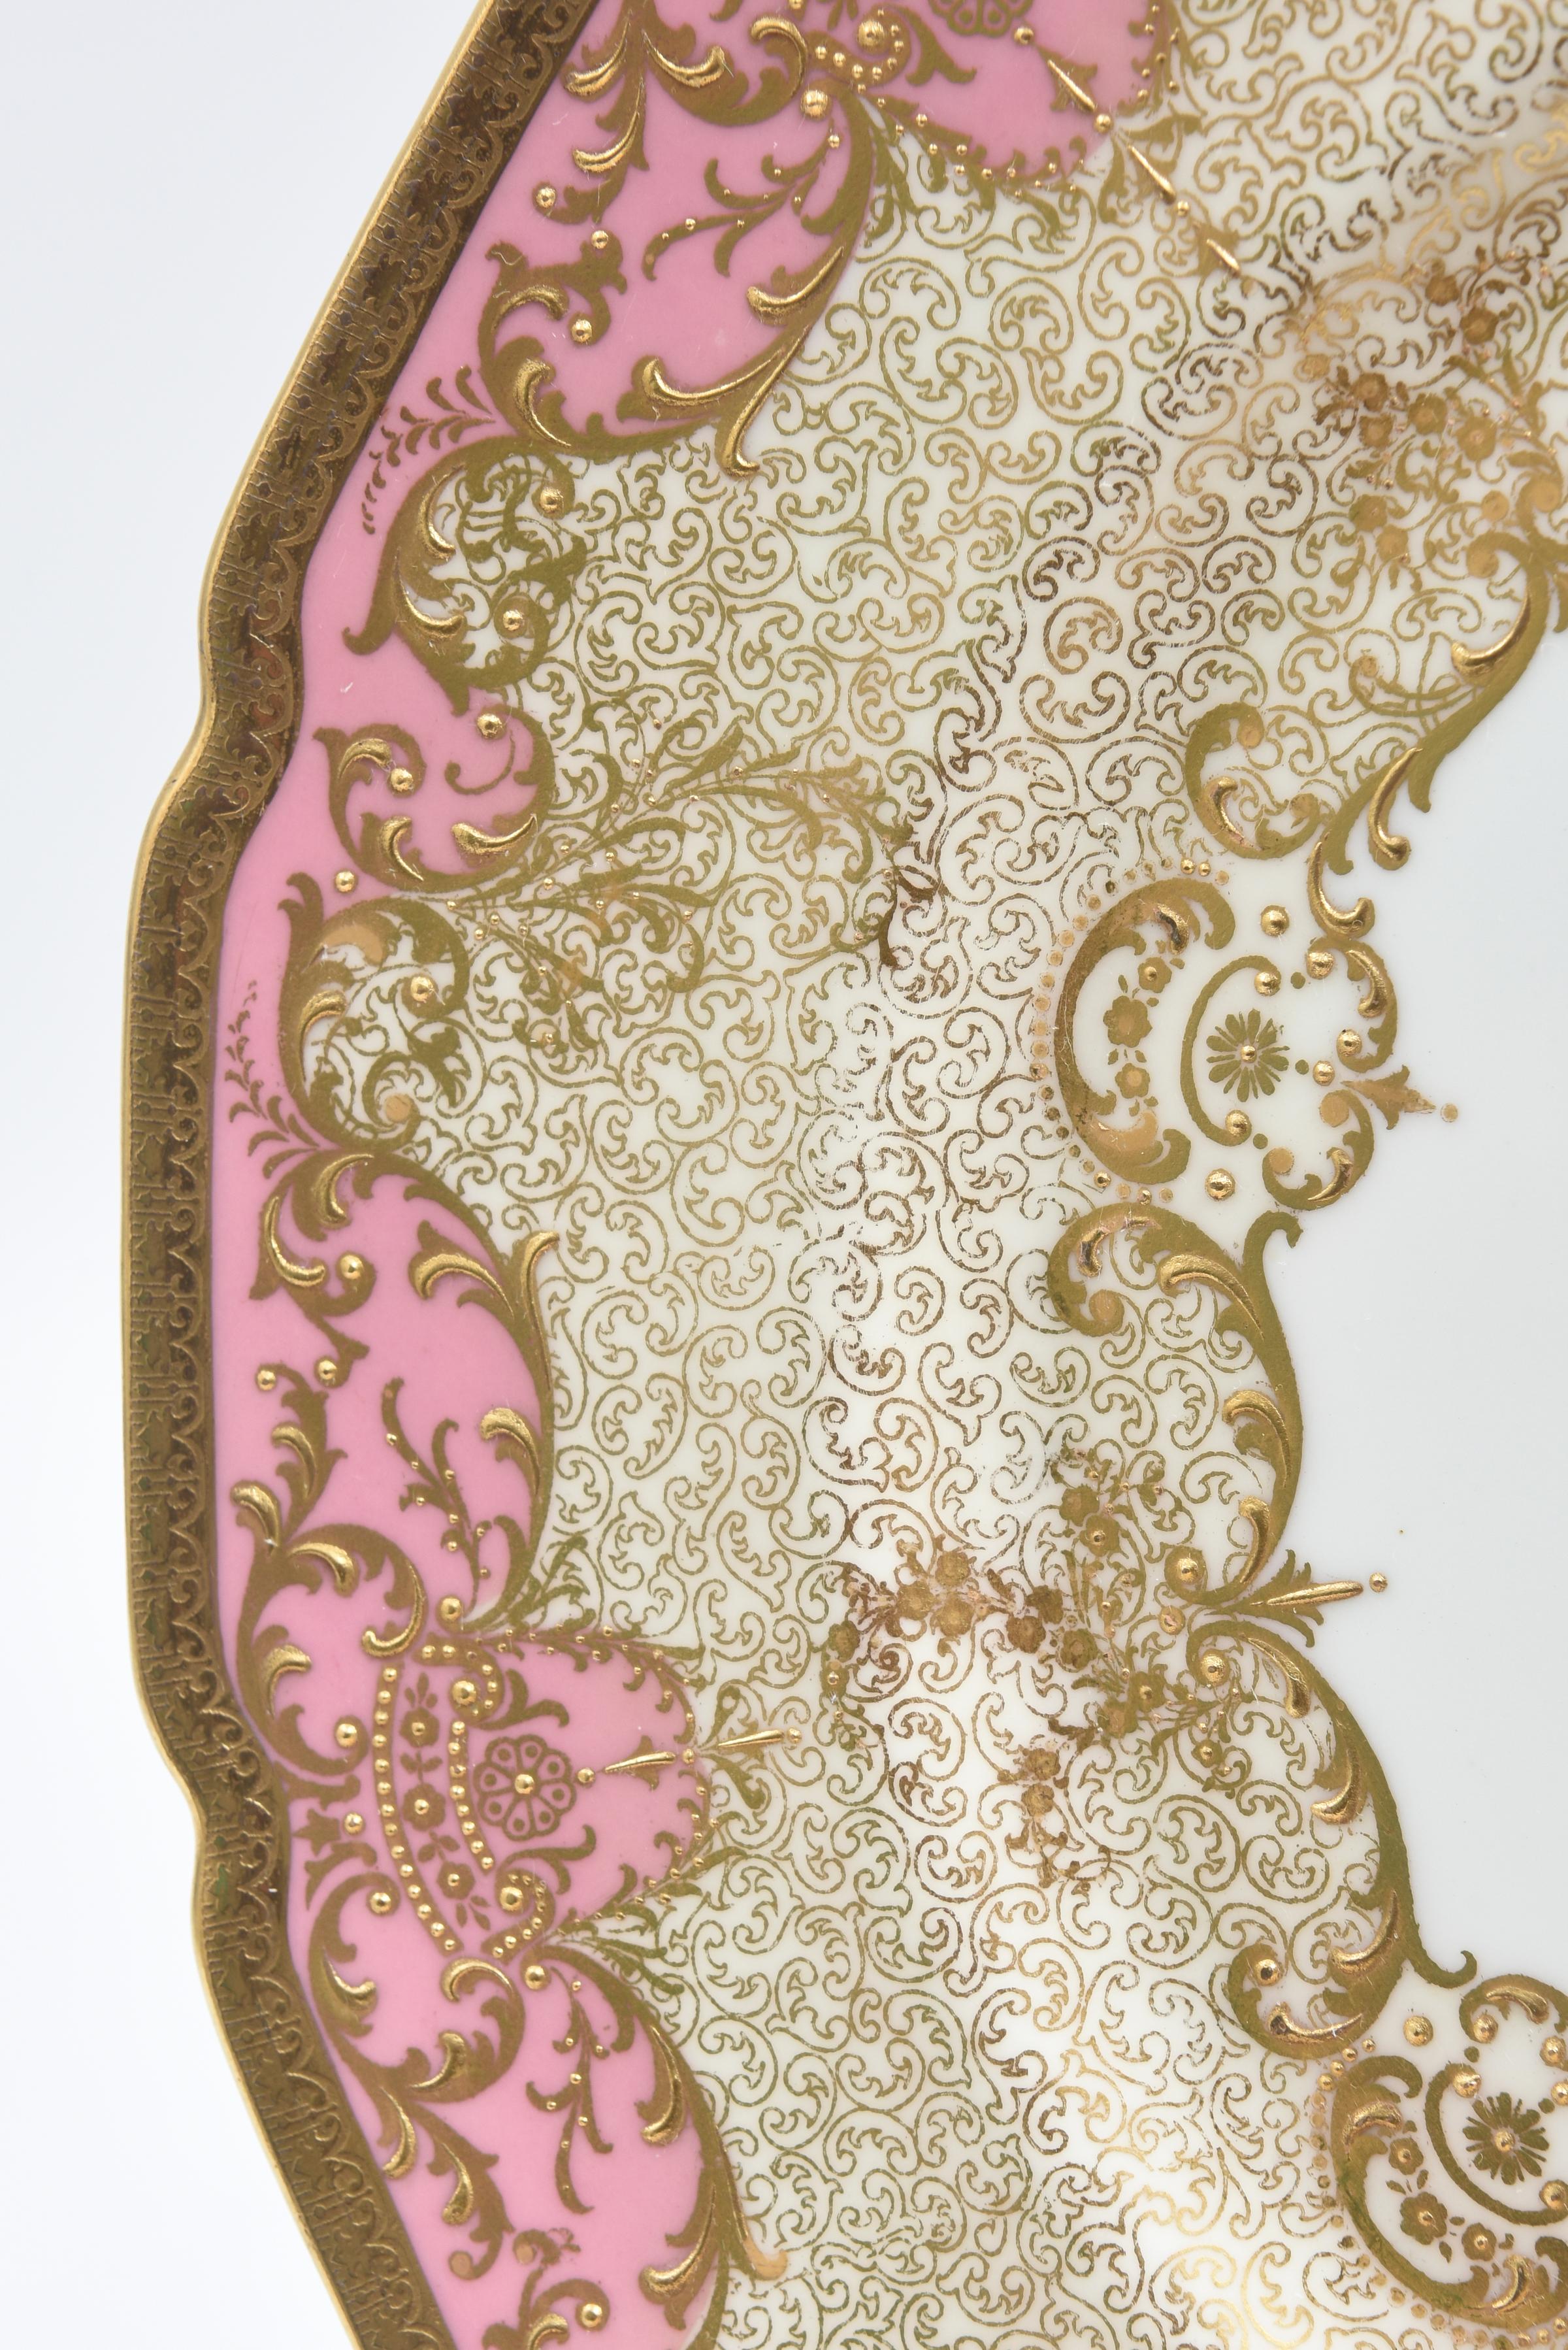 Rococo Ten Pink Gilt Encrusted Presentation or Dinner Plates Antique English circa 1910